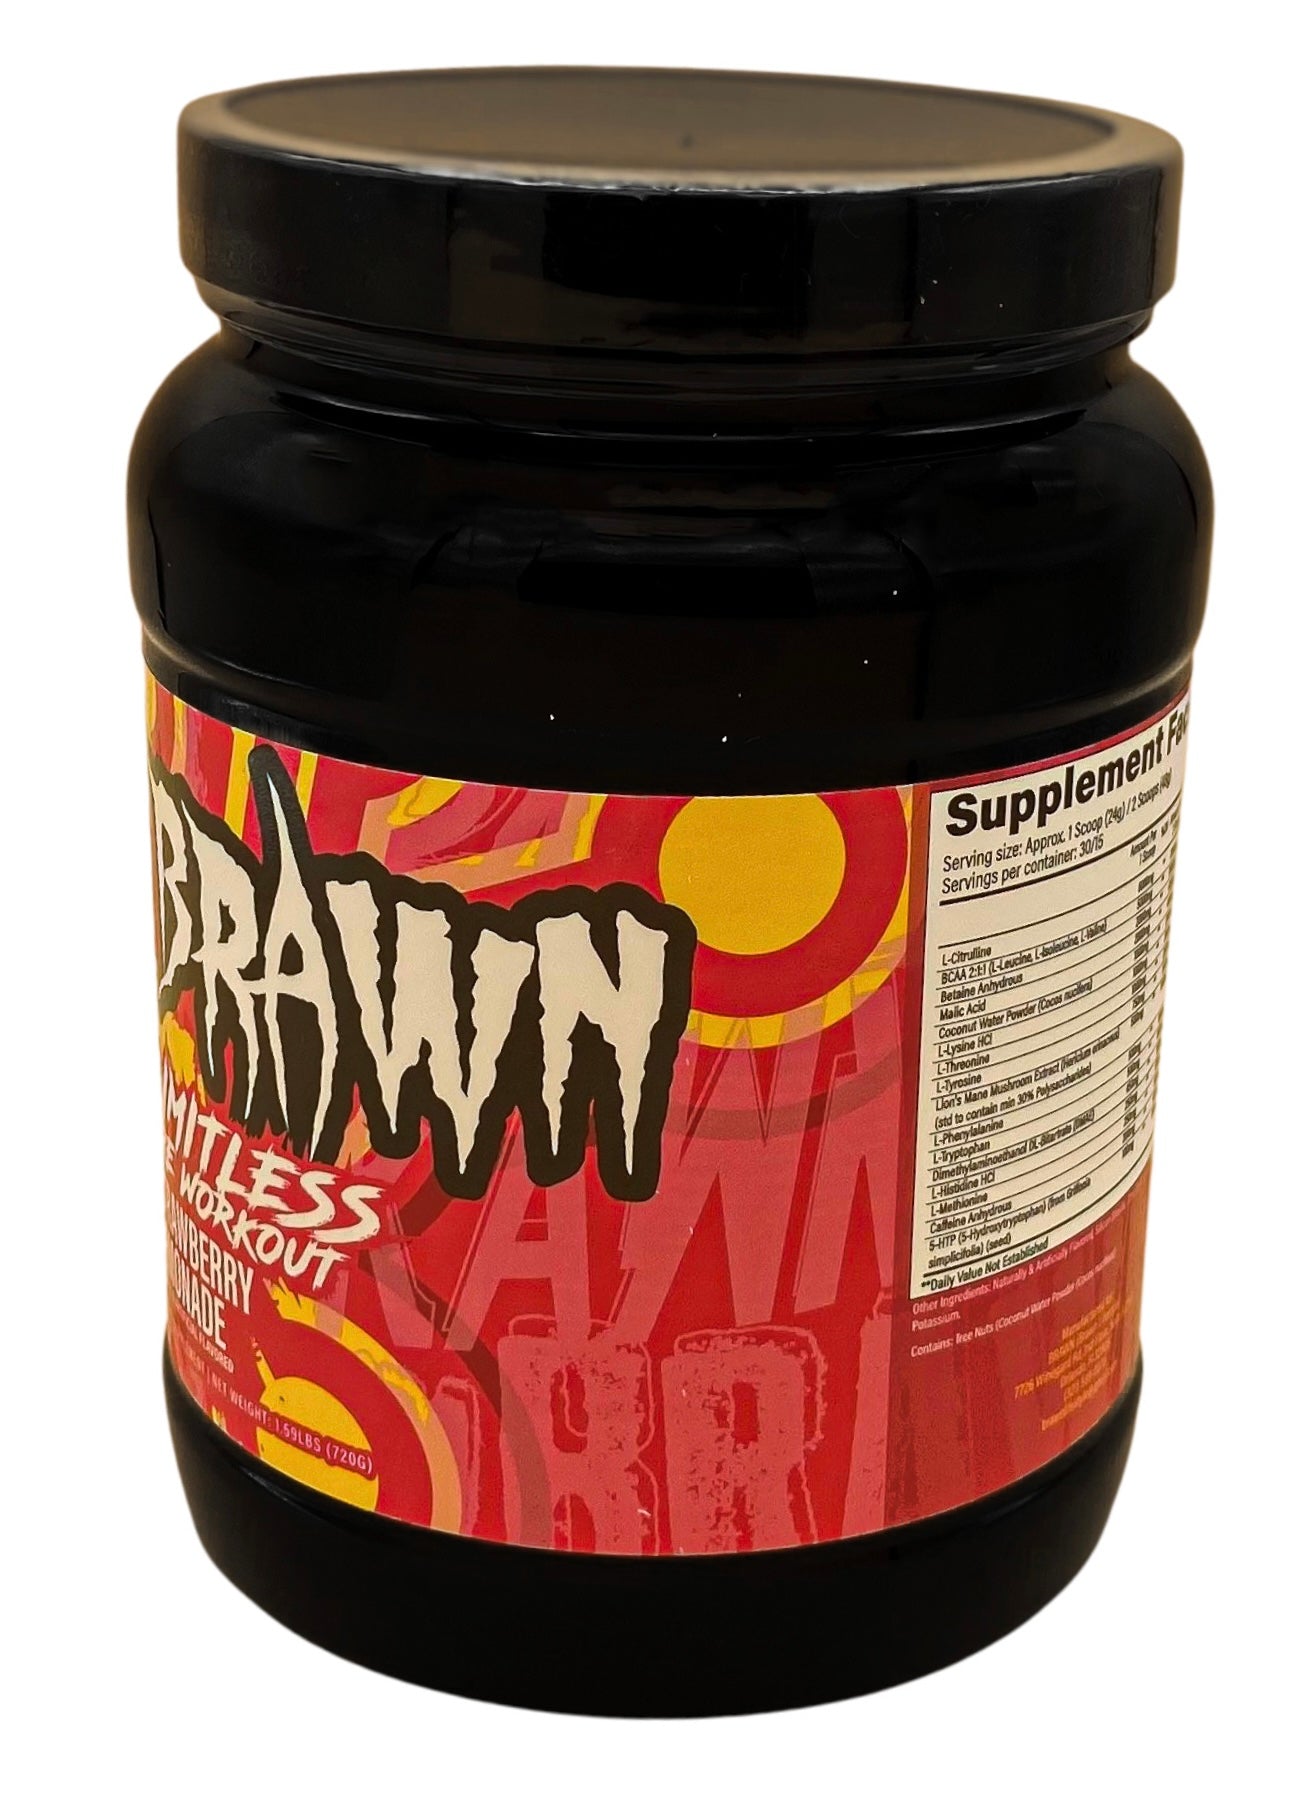 Brawn - LIMITLESS Pre-Workout (Strawberry Lemonade) 30 Servings